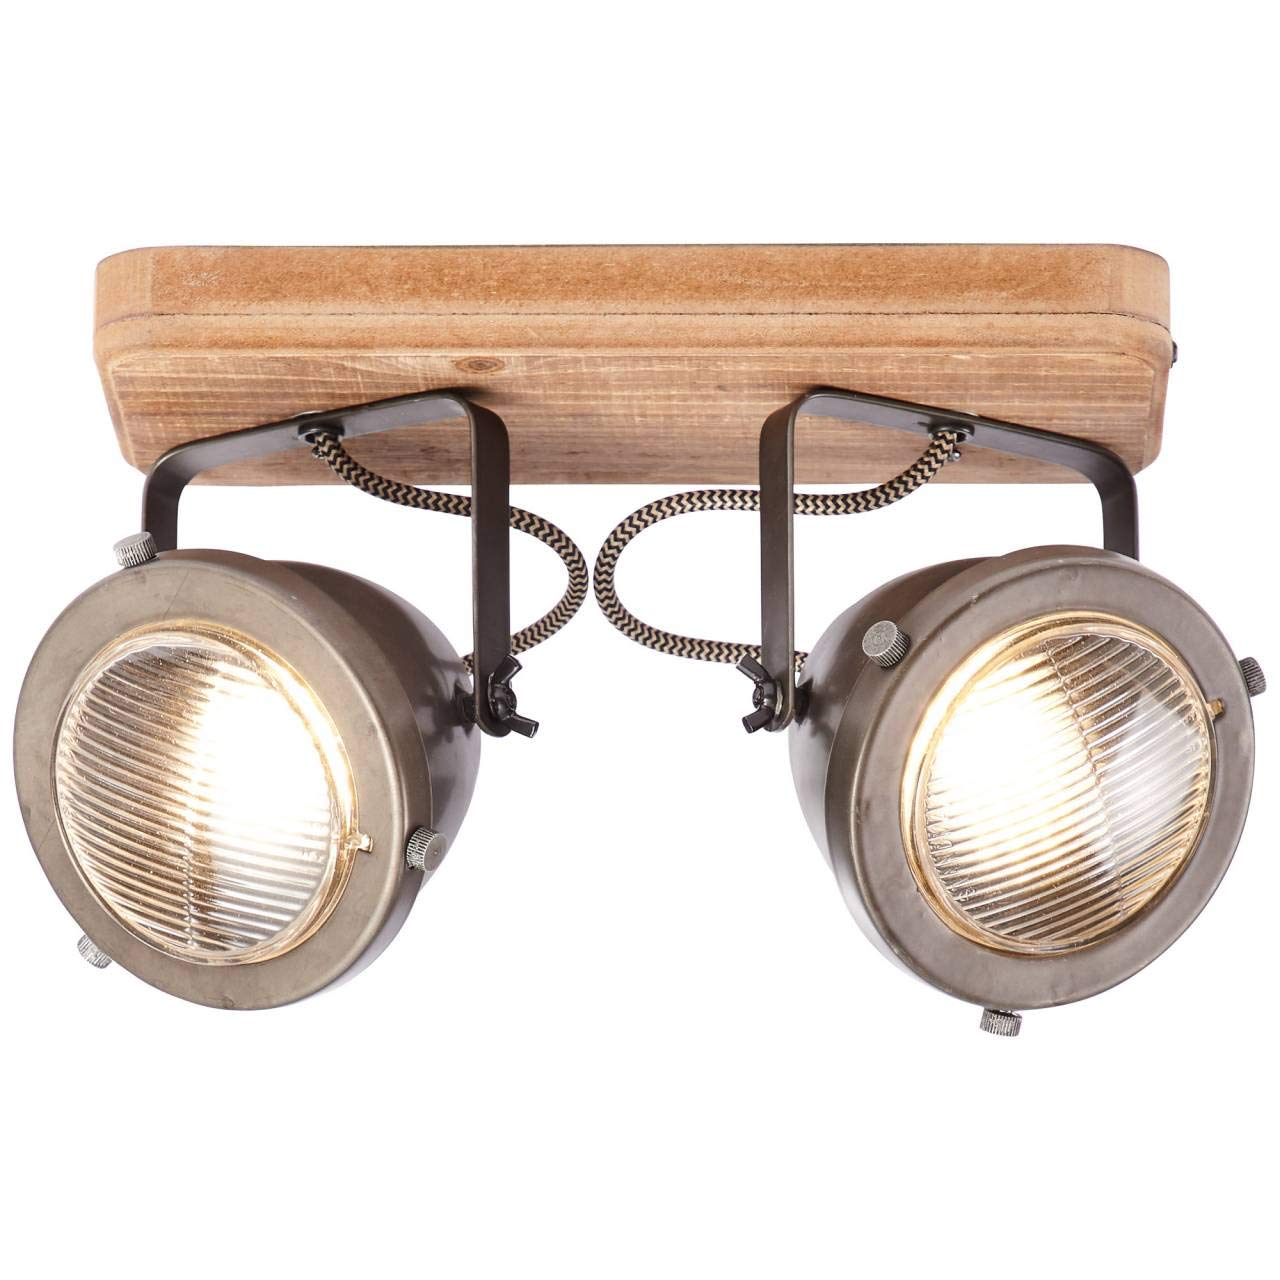 BRILLIANT Lampe Carmen Wood Spotbalken 2flg burned steel/holz | 2x PAR51, GU10, 5W, geeignet für Reflektorlampen (nicht enthalten) | Köpfe schwenkbar